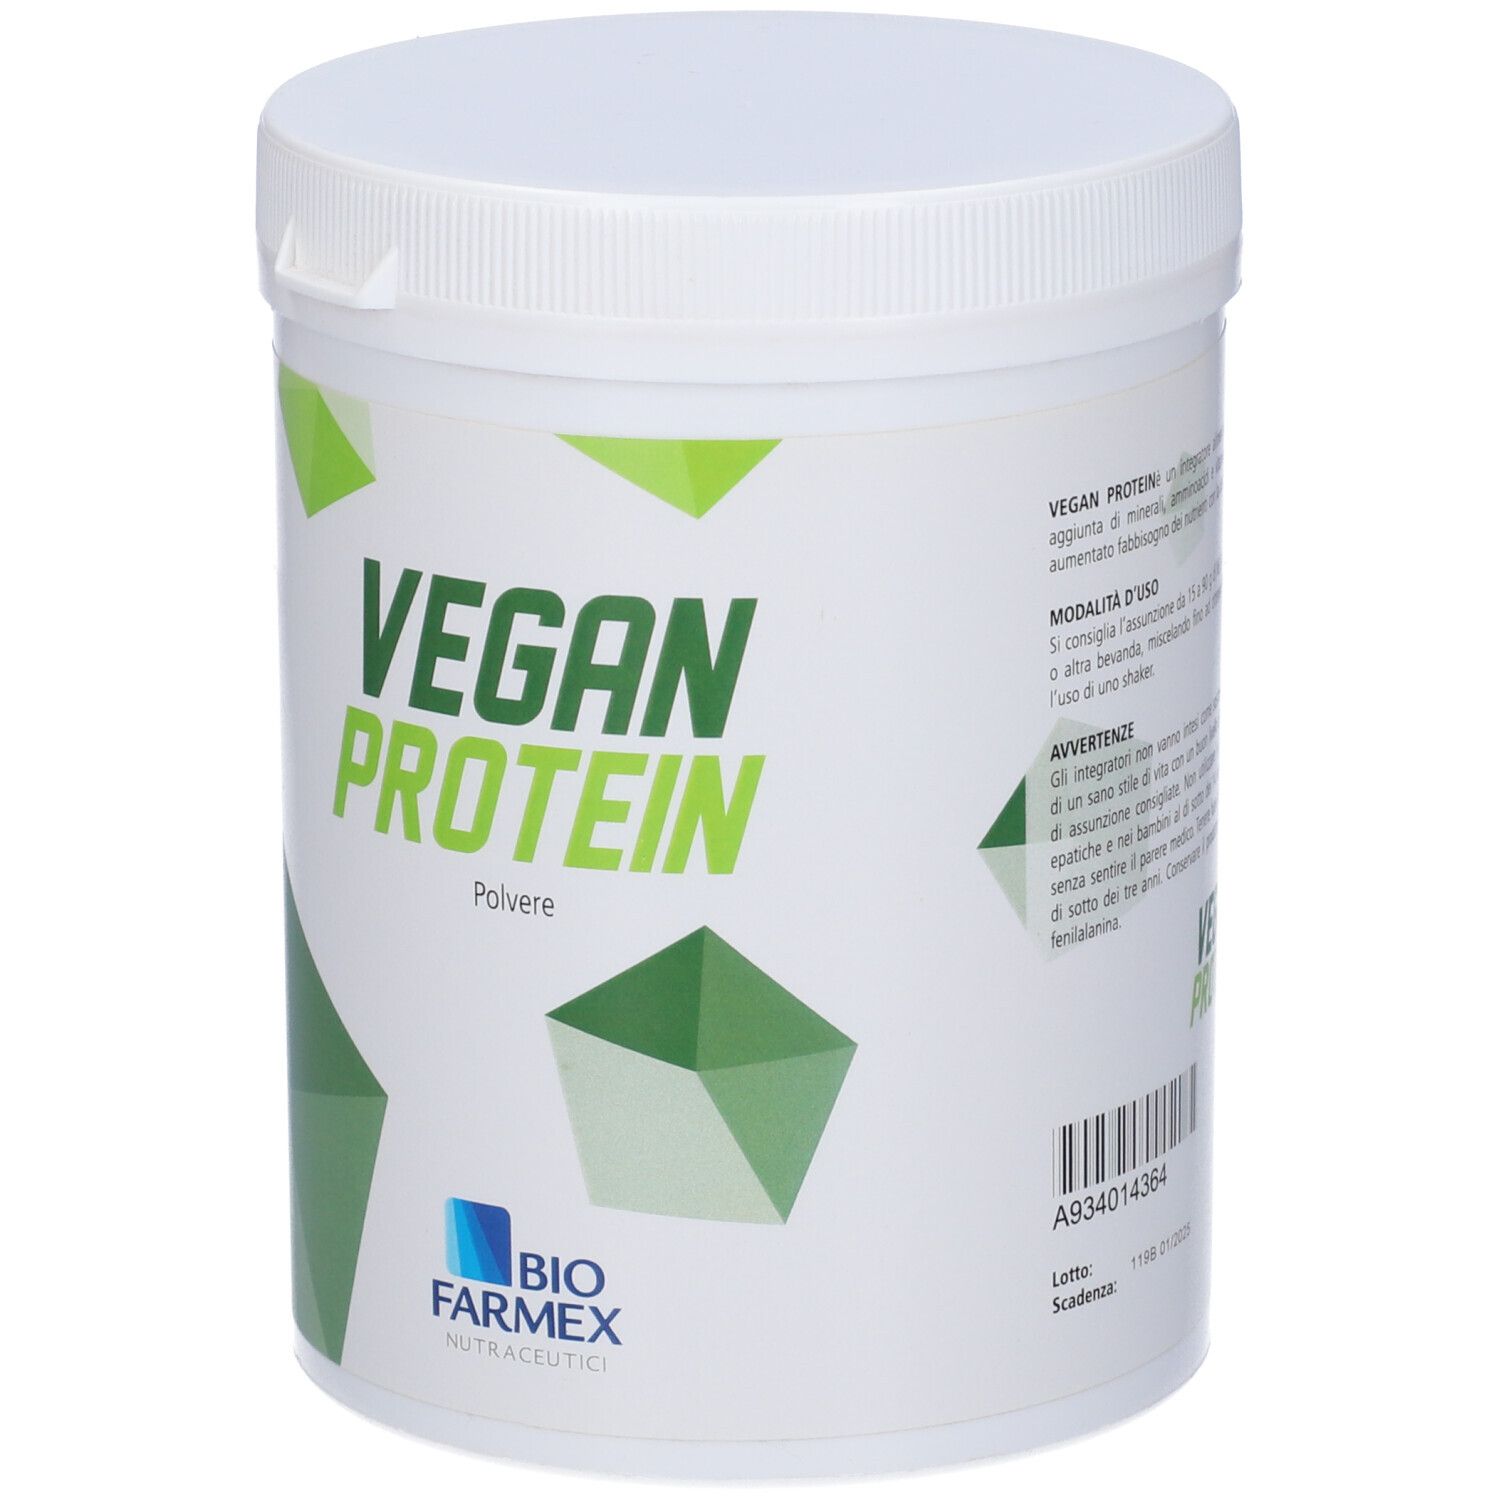 Biofarmex Vegan Proteine in Polvere